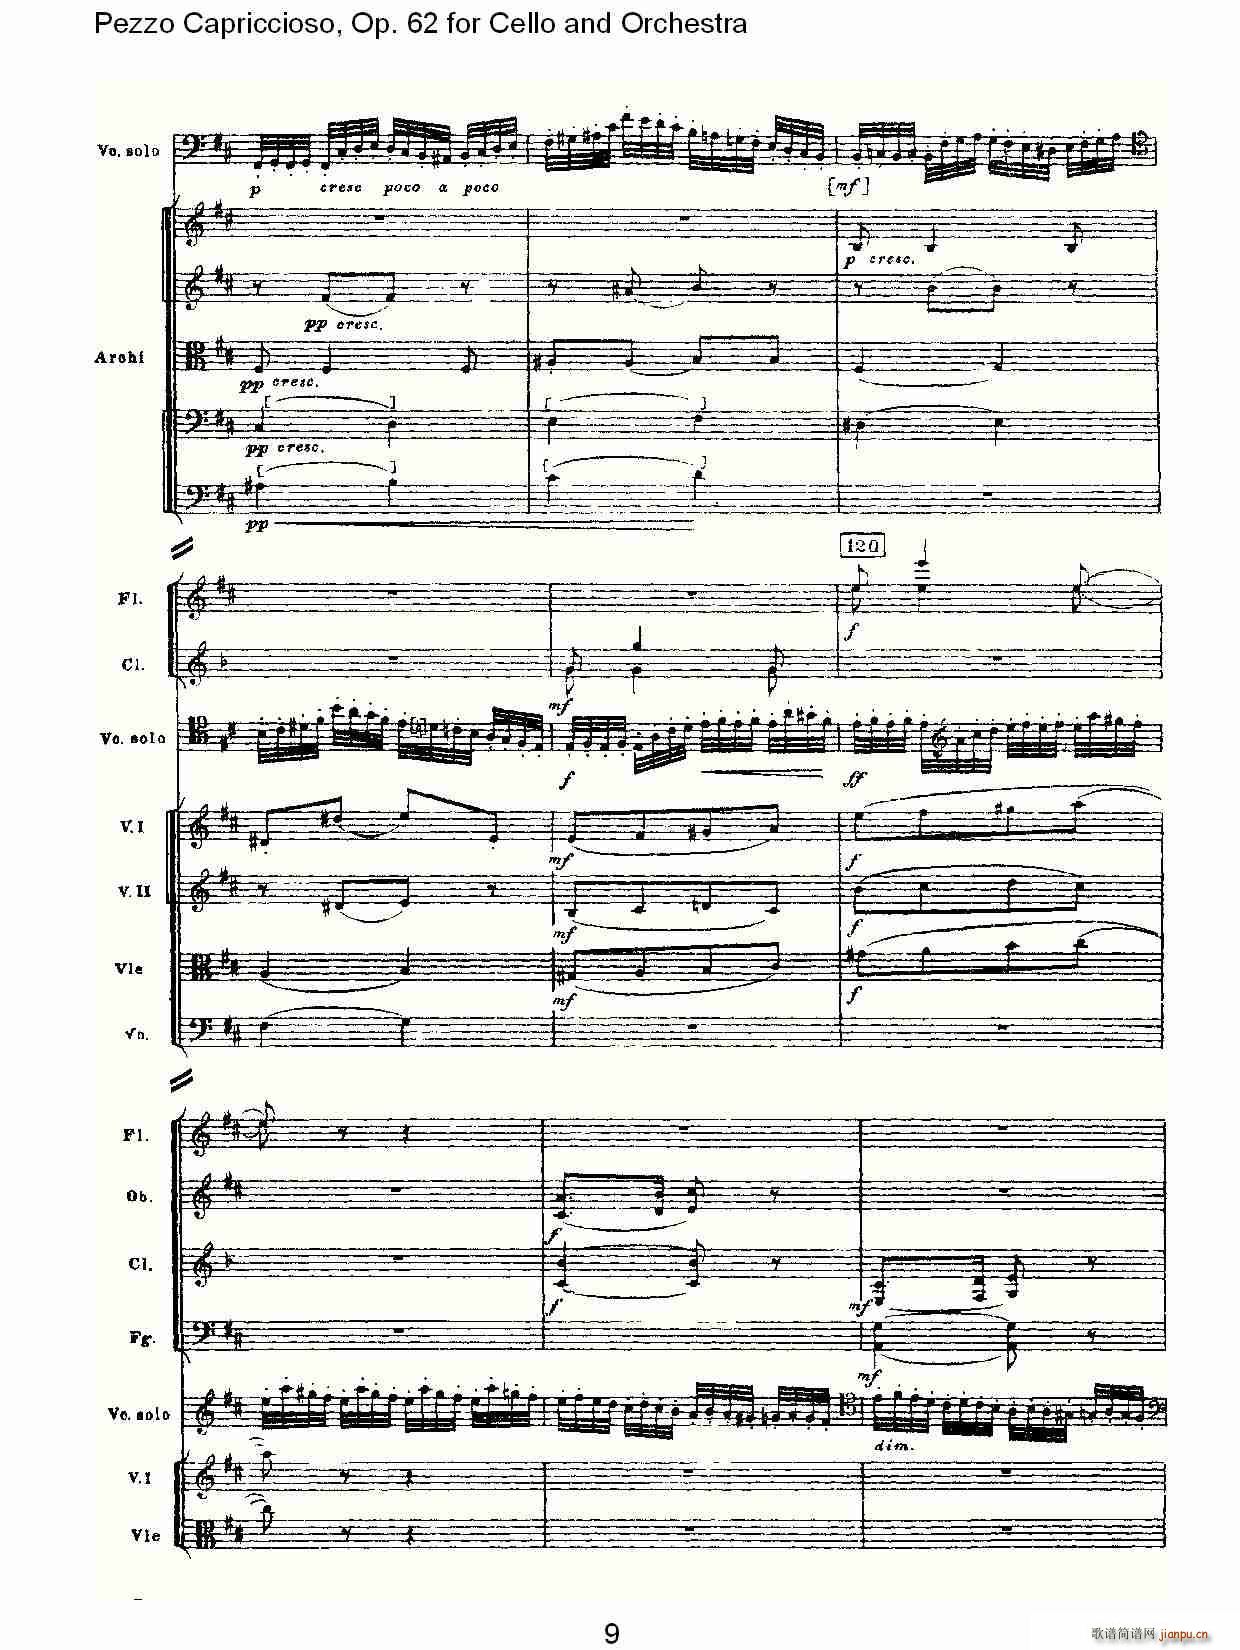 Pezzo Capriccioso, Op.62()9